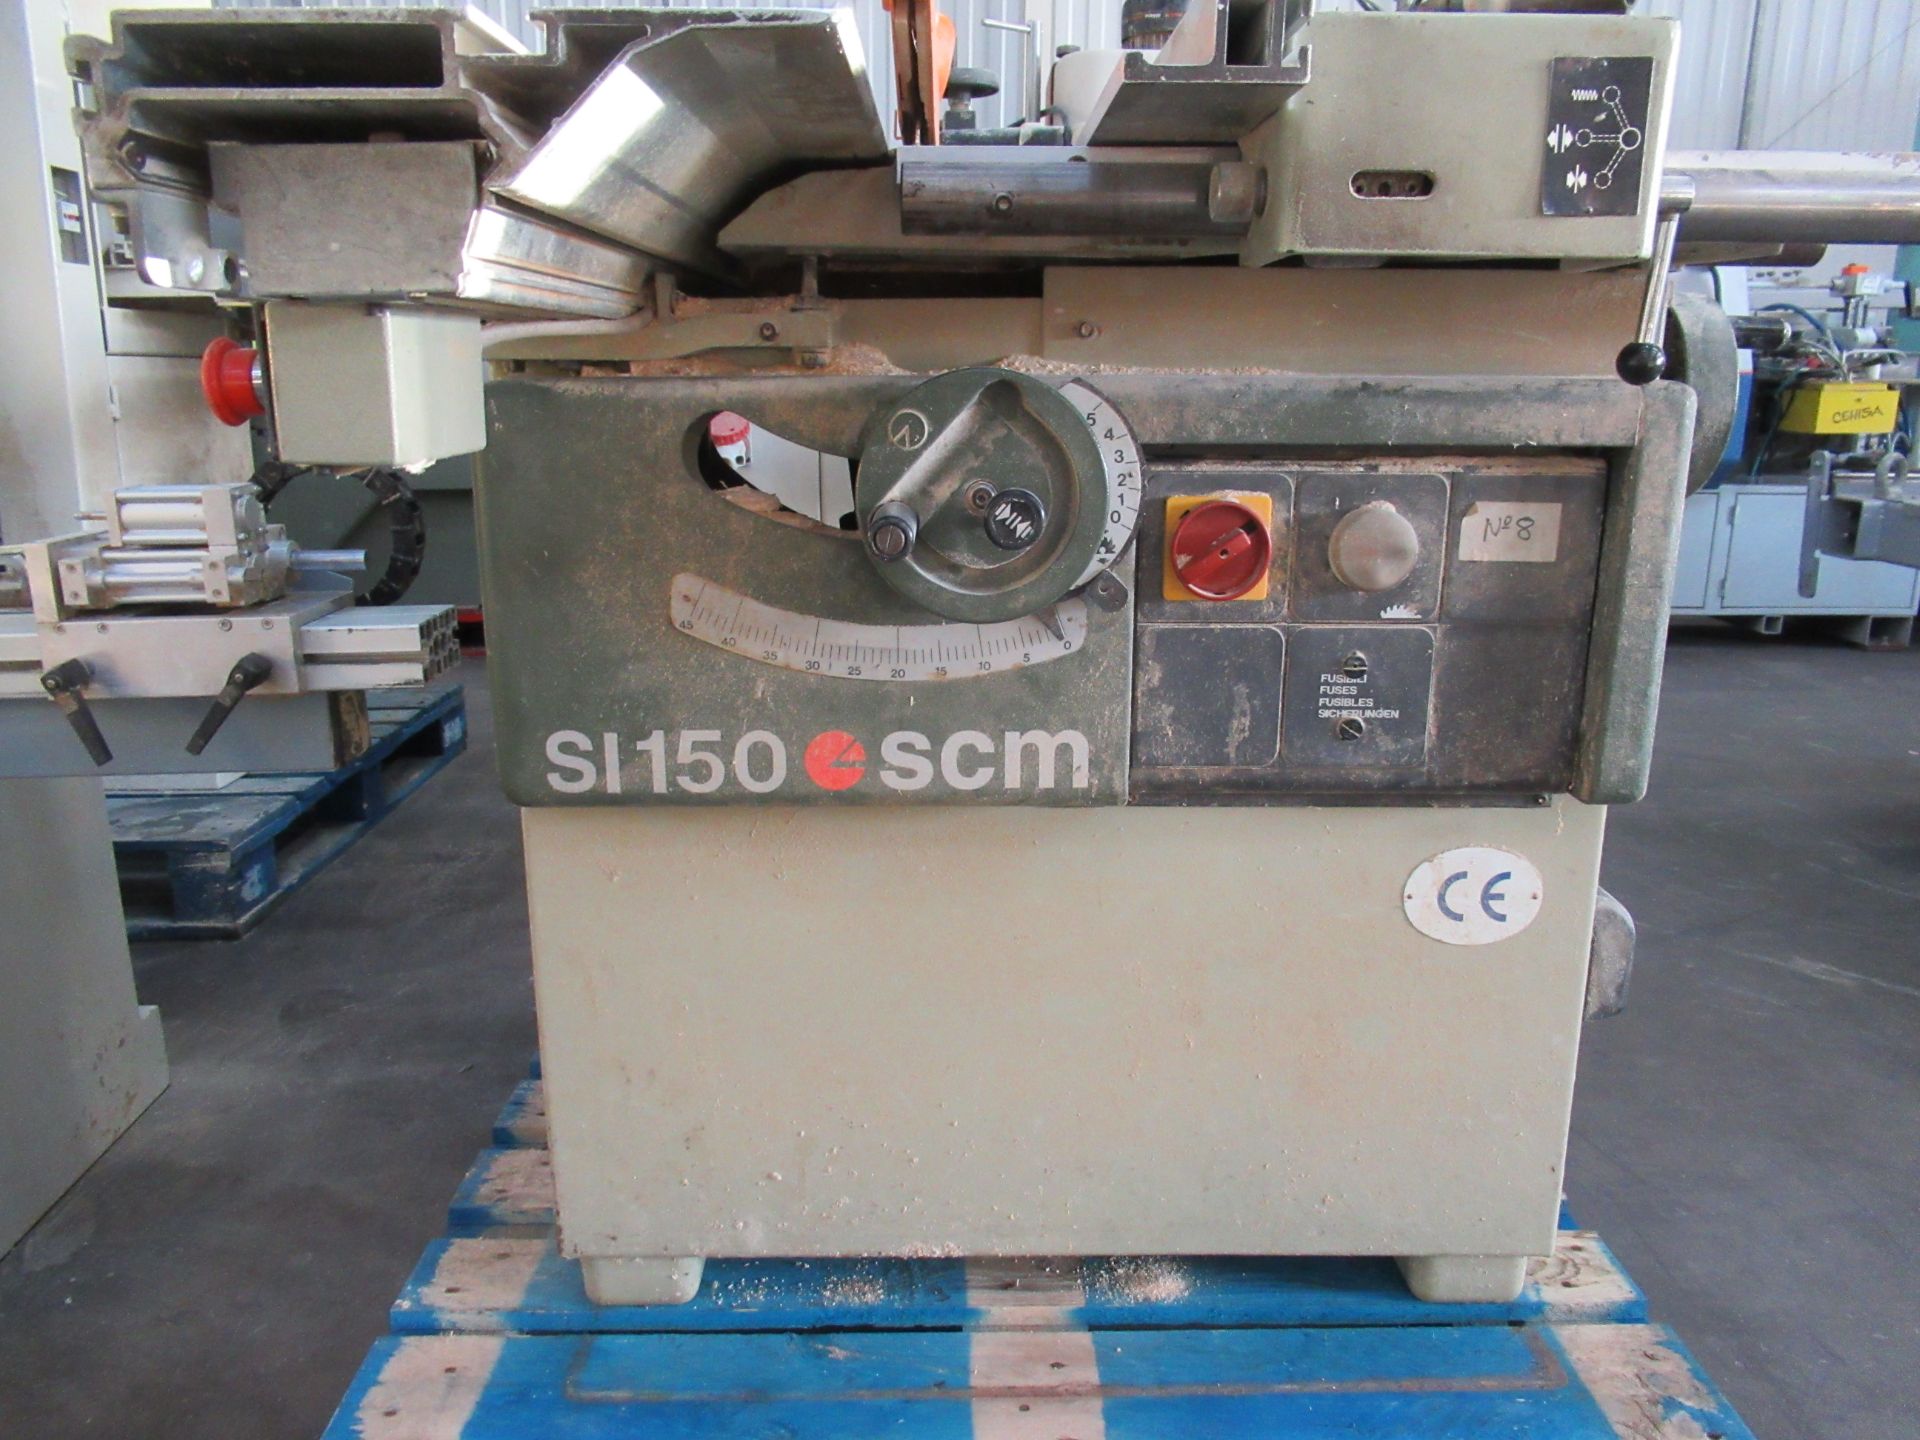 SCM Si150 Sliding Tablesaw - 400V - Image 2 of 5